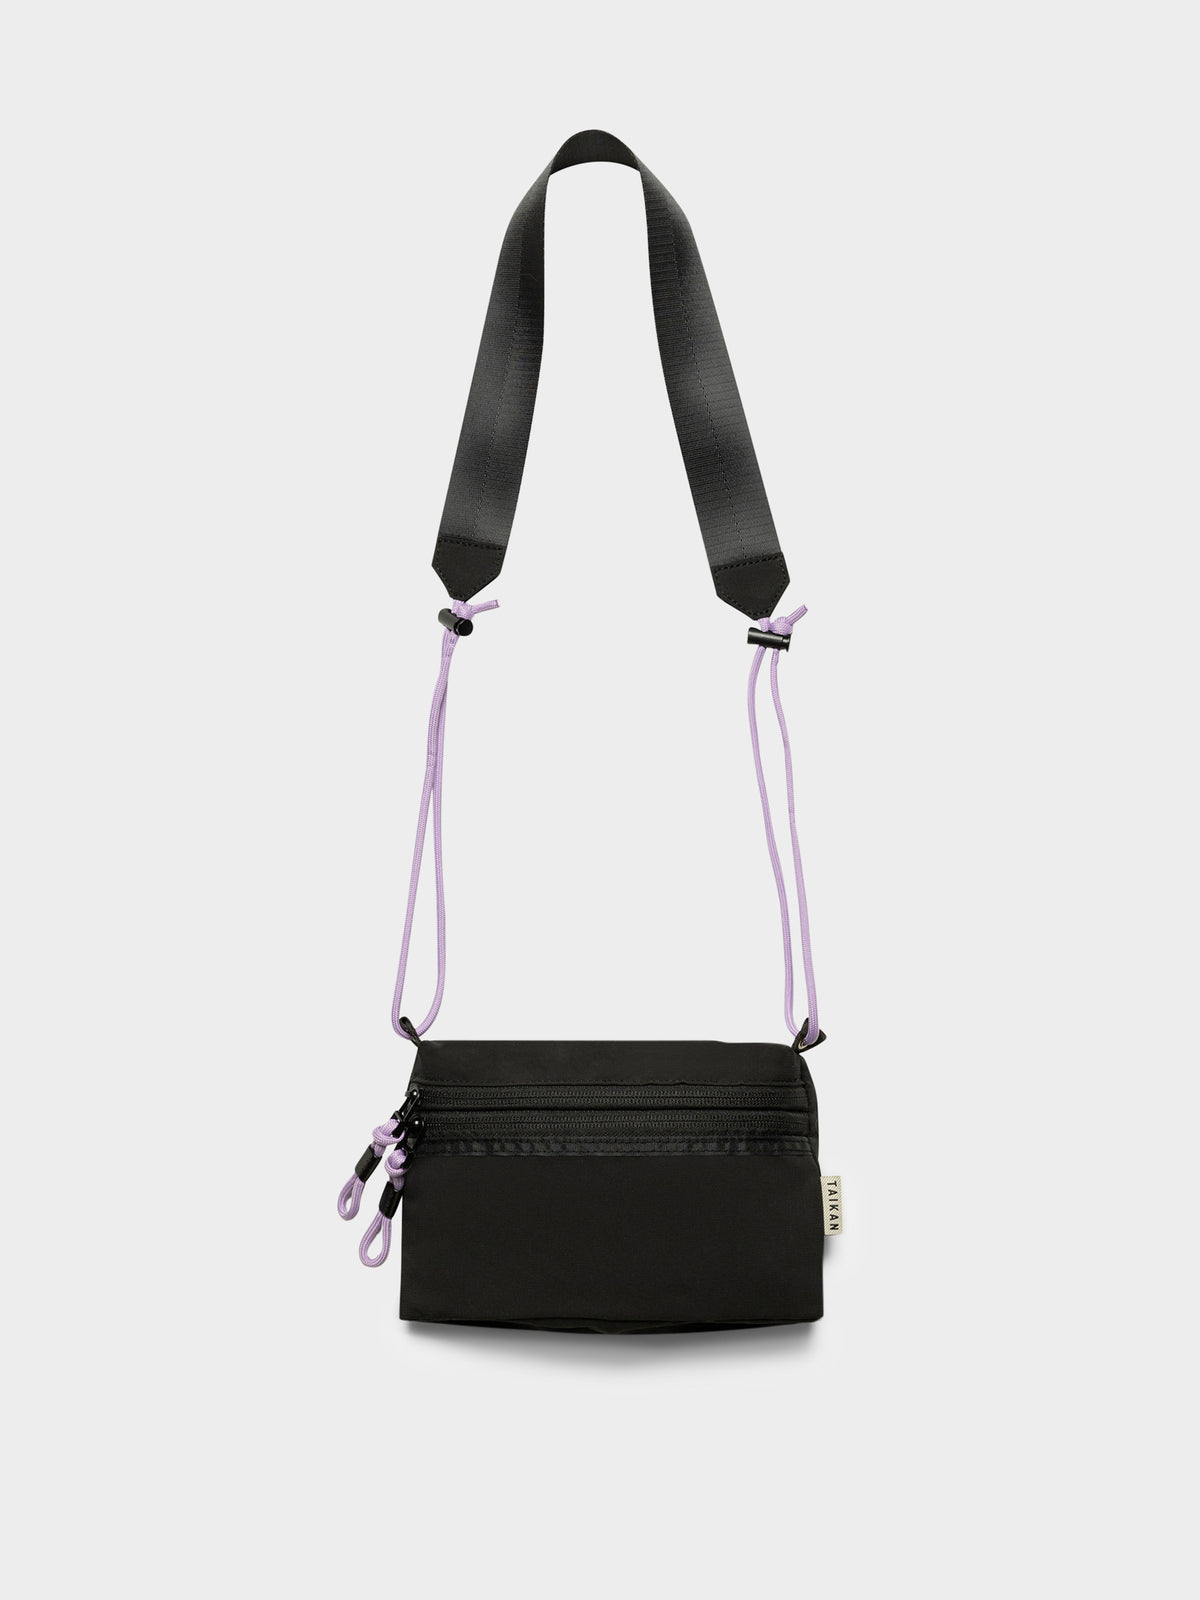 Sacoche Premium Small Bag in Black Ripstop